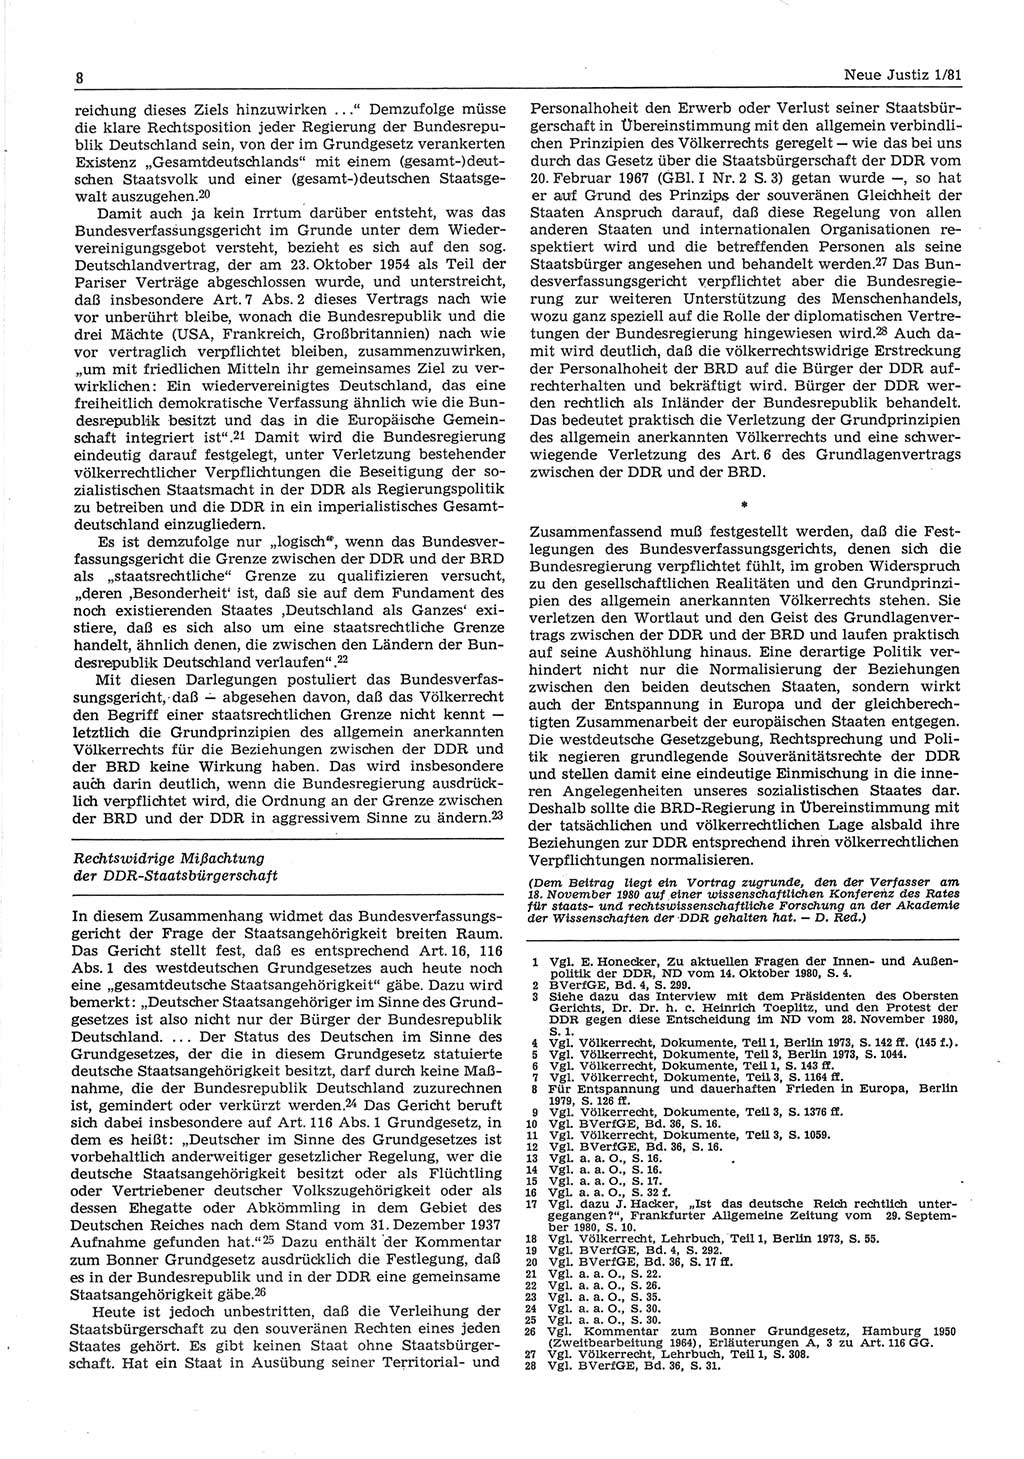 Neue Justiz (NJ), Zeitschrift für sozialistisches Recht und Gesetzlichkeit [Deutsche Demokratische Republik (DDR)], 35. Jahrgang 1981, Seite 8 (NJ DDR 1981, S. 8)